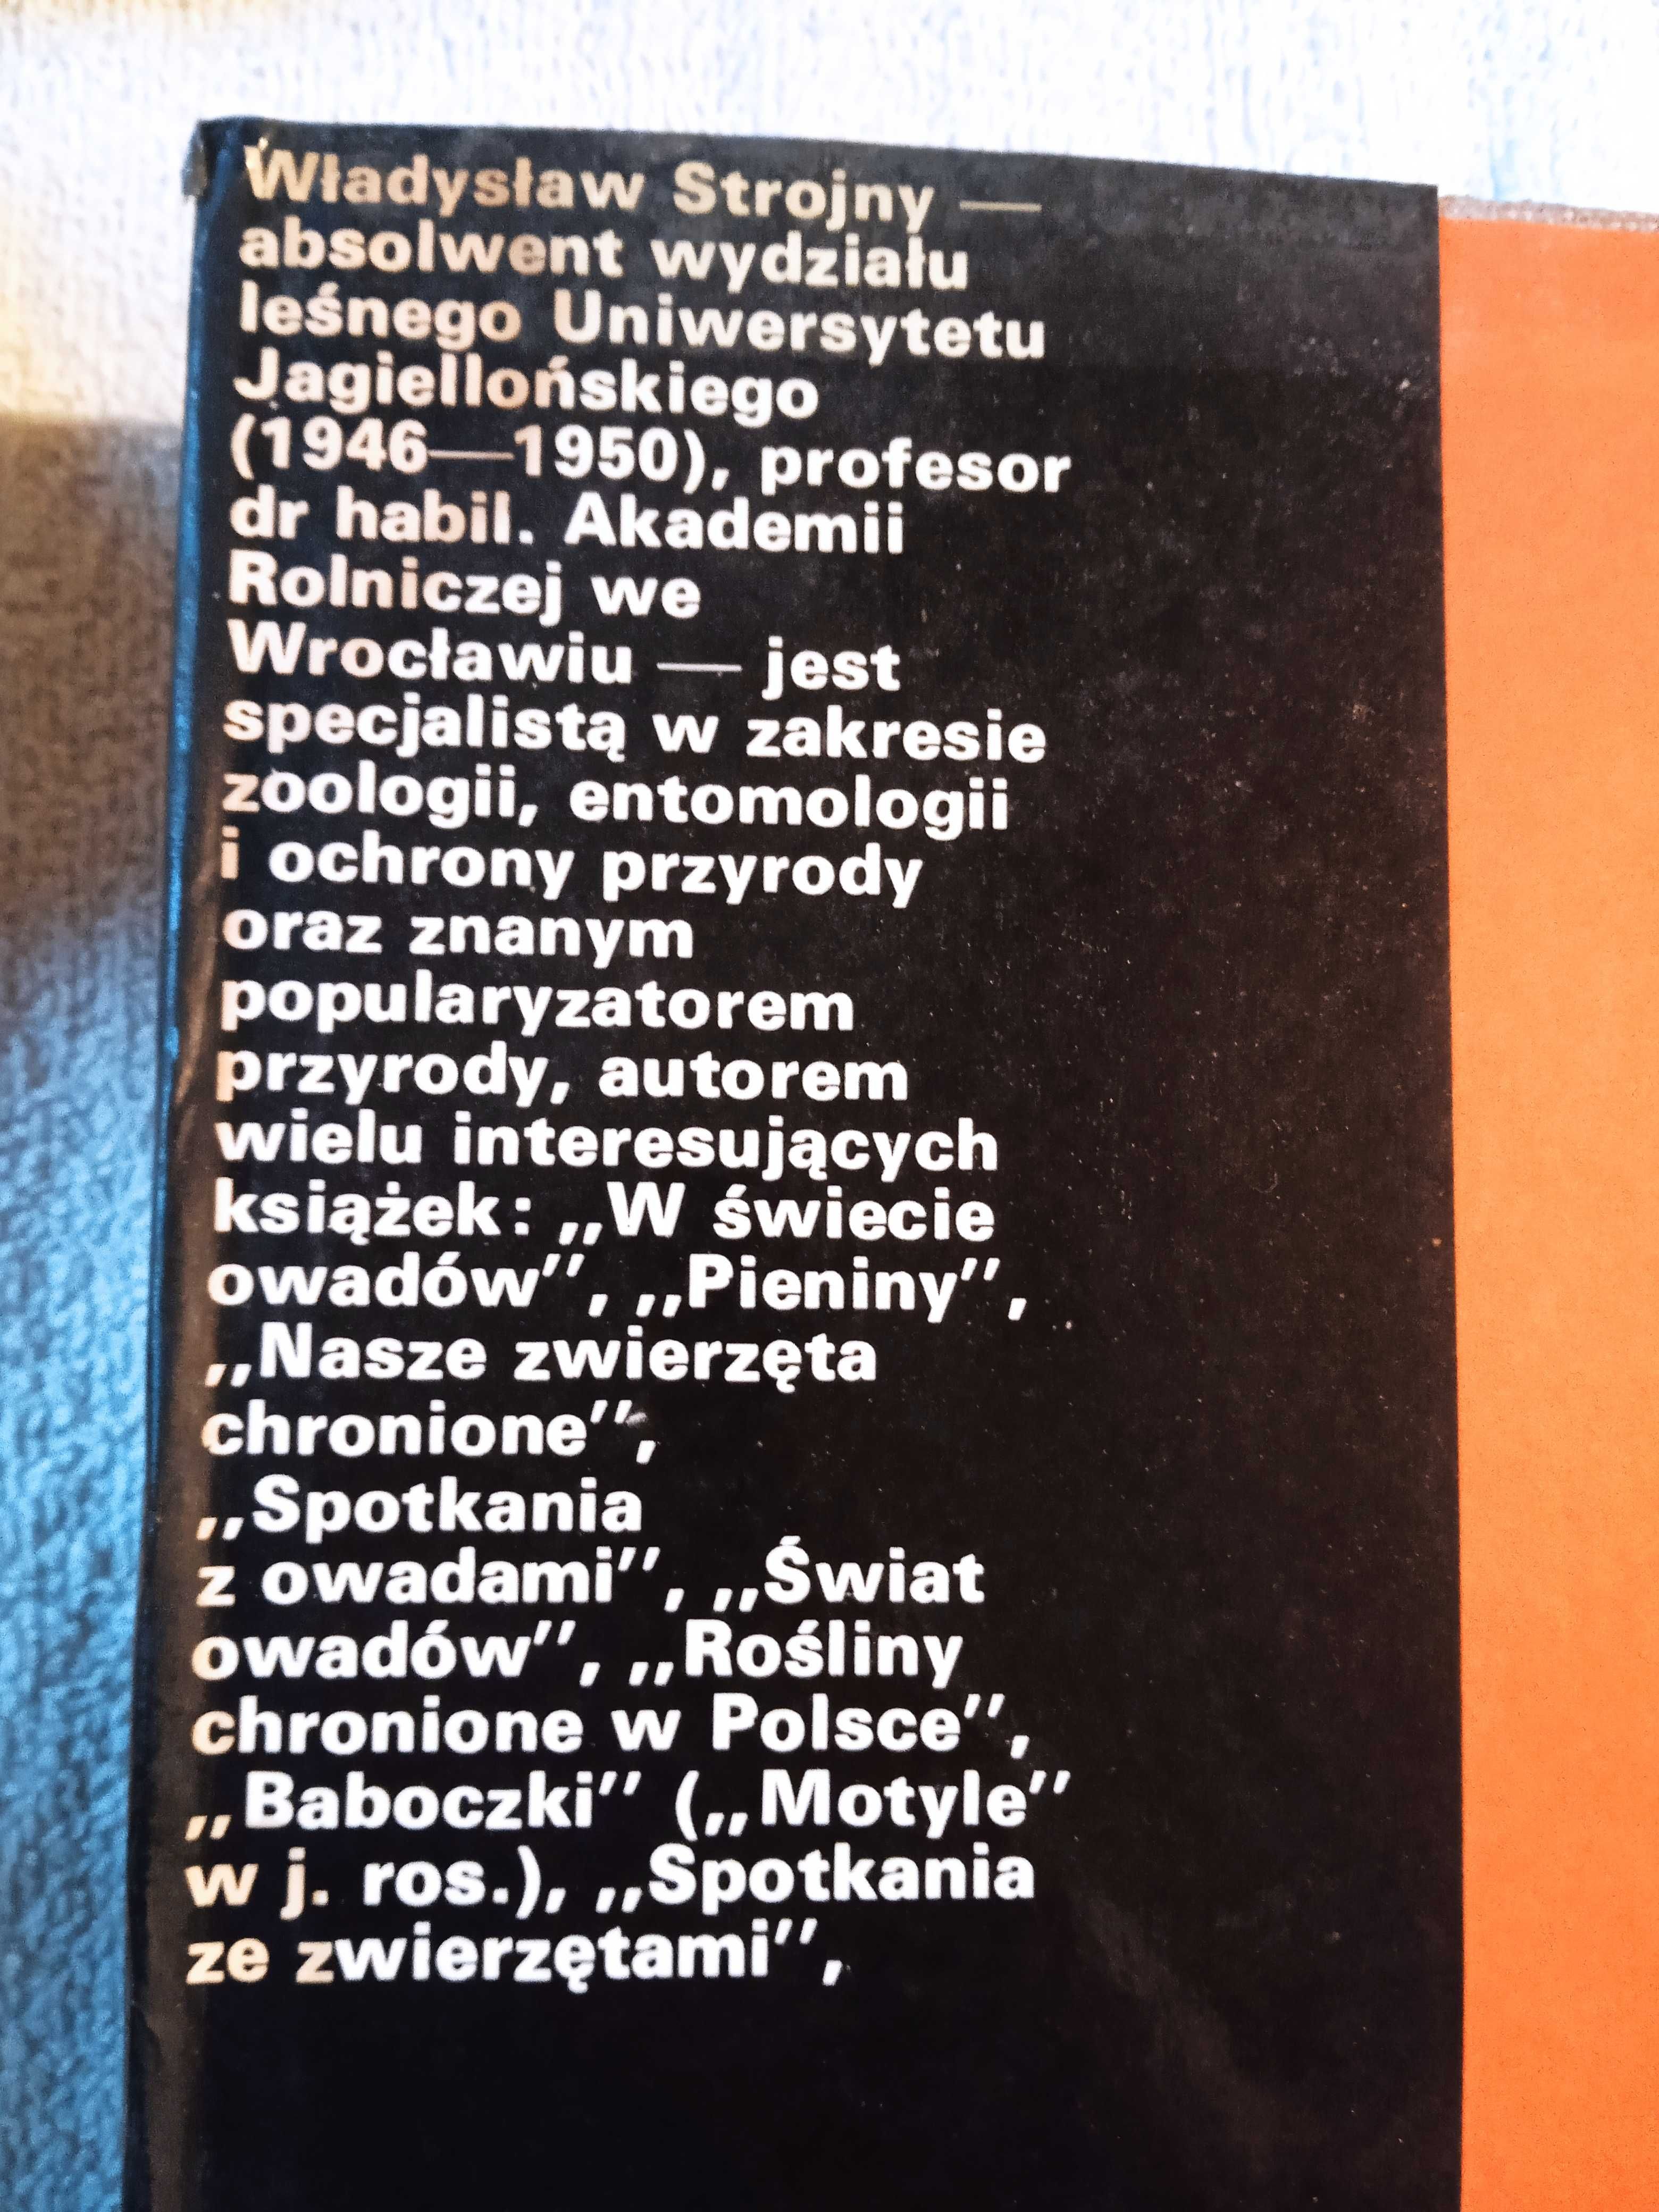 Władysław Strojny - Nasze zwierzęta. PWRiL 1981. Wyd. I.